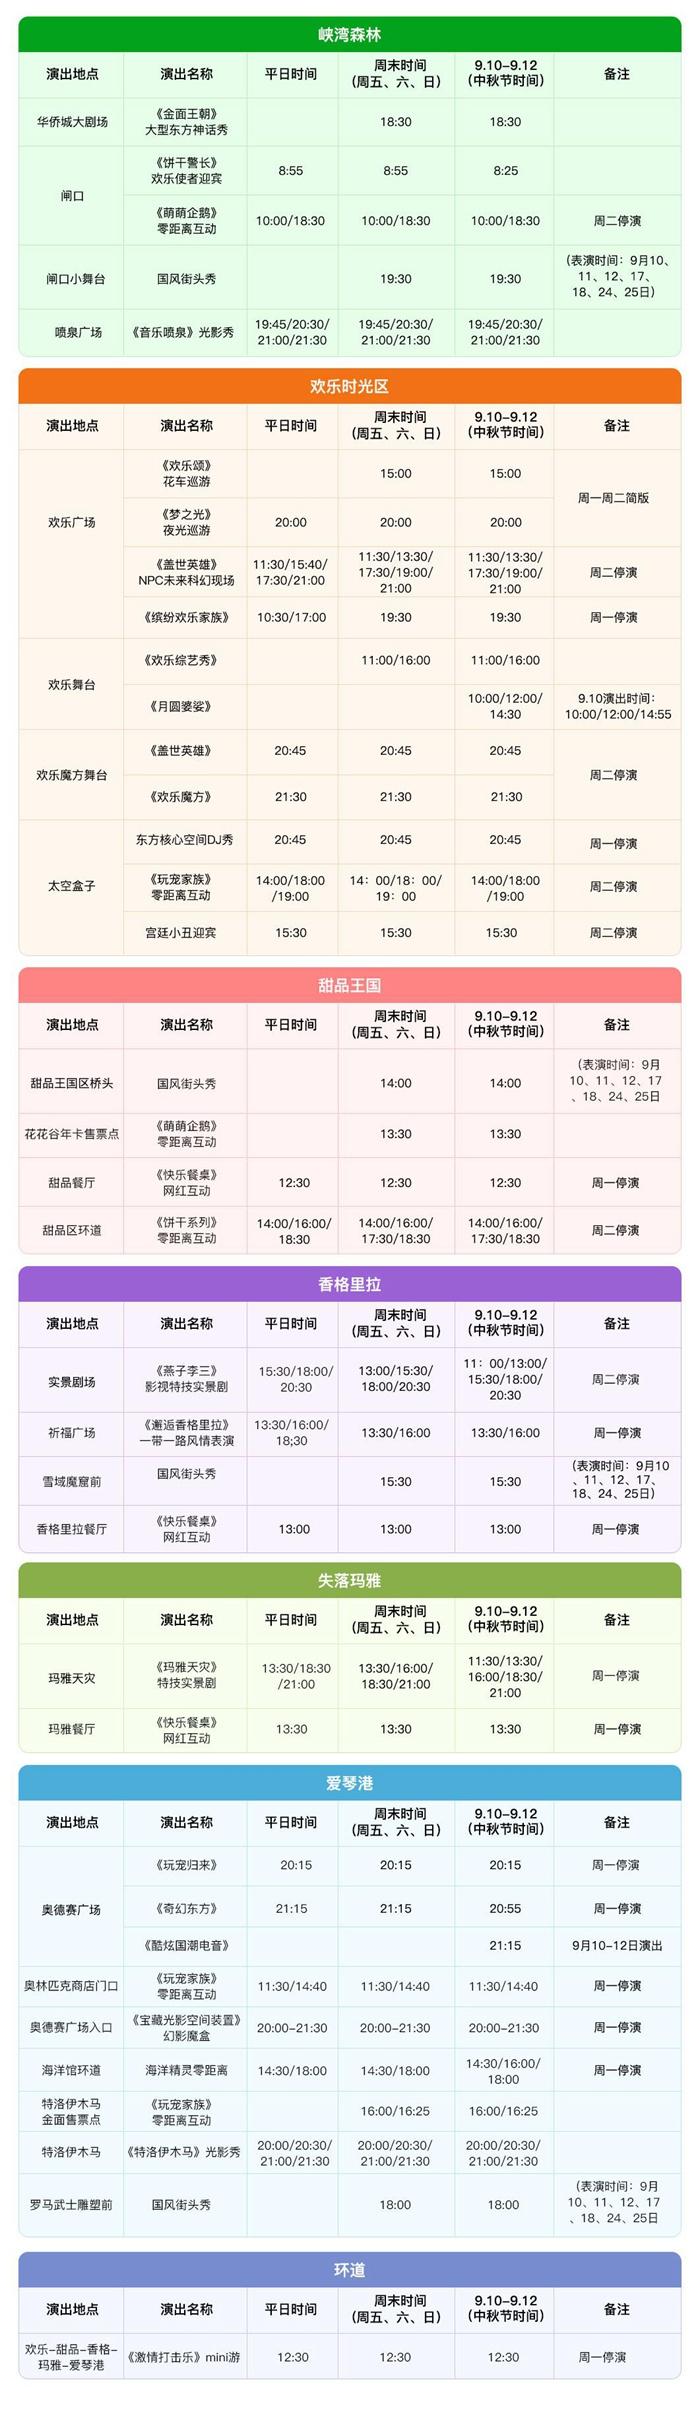 2023北京欢乐谷游玩攻略 - 门票价格 - 游乐项目 - 开放时间 - 地址 - 交通 - 天气